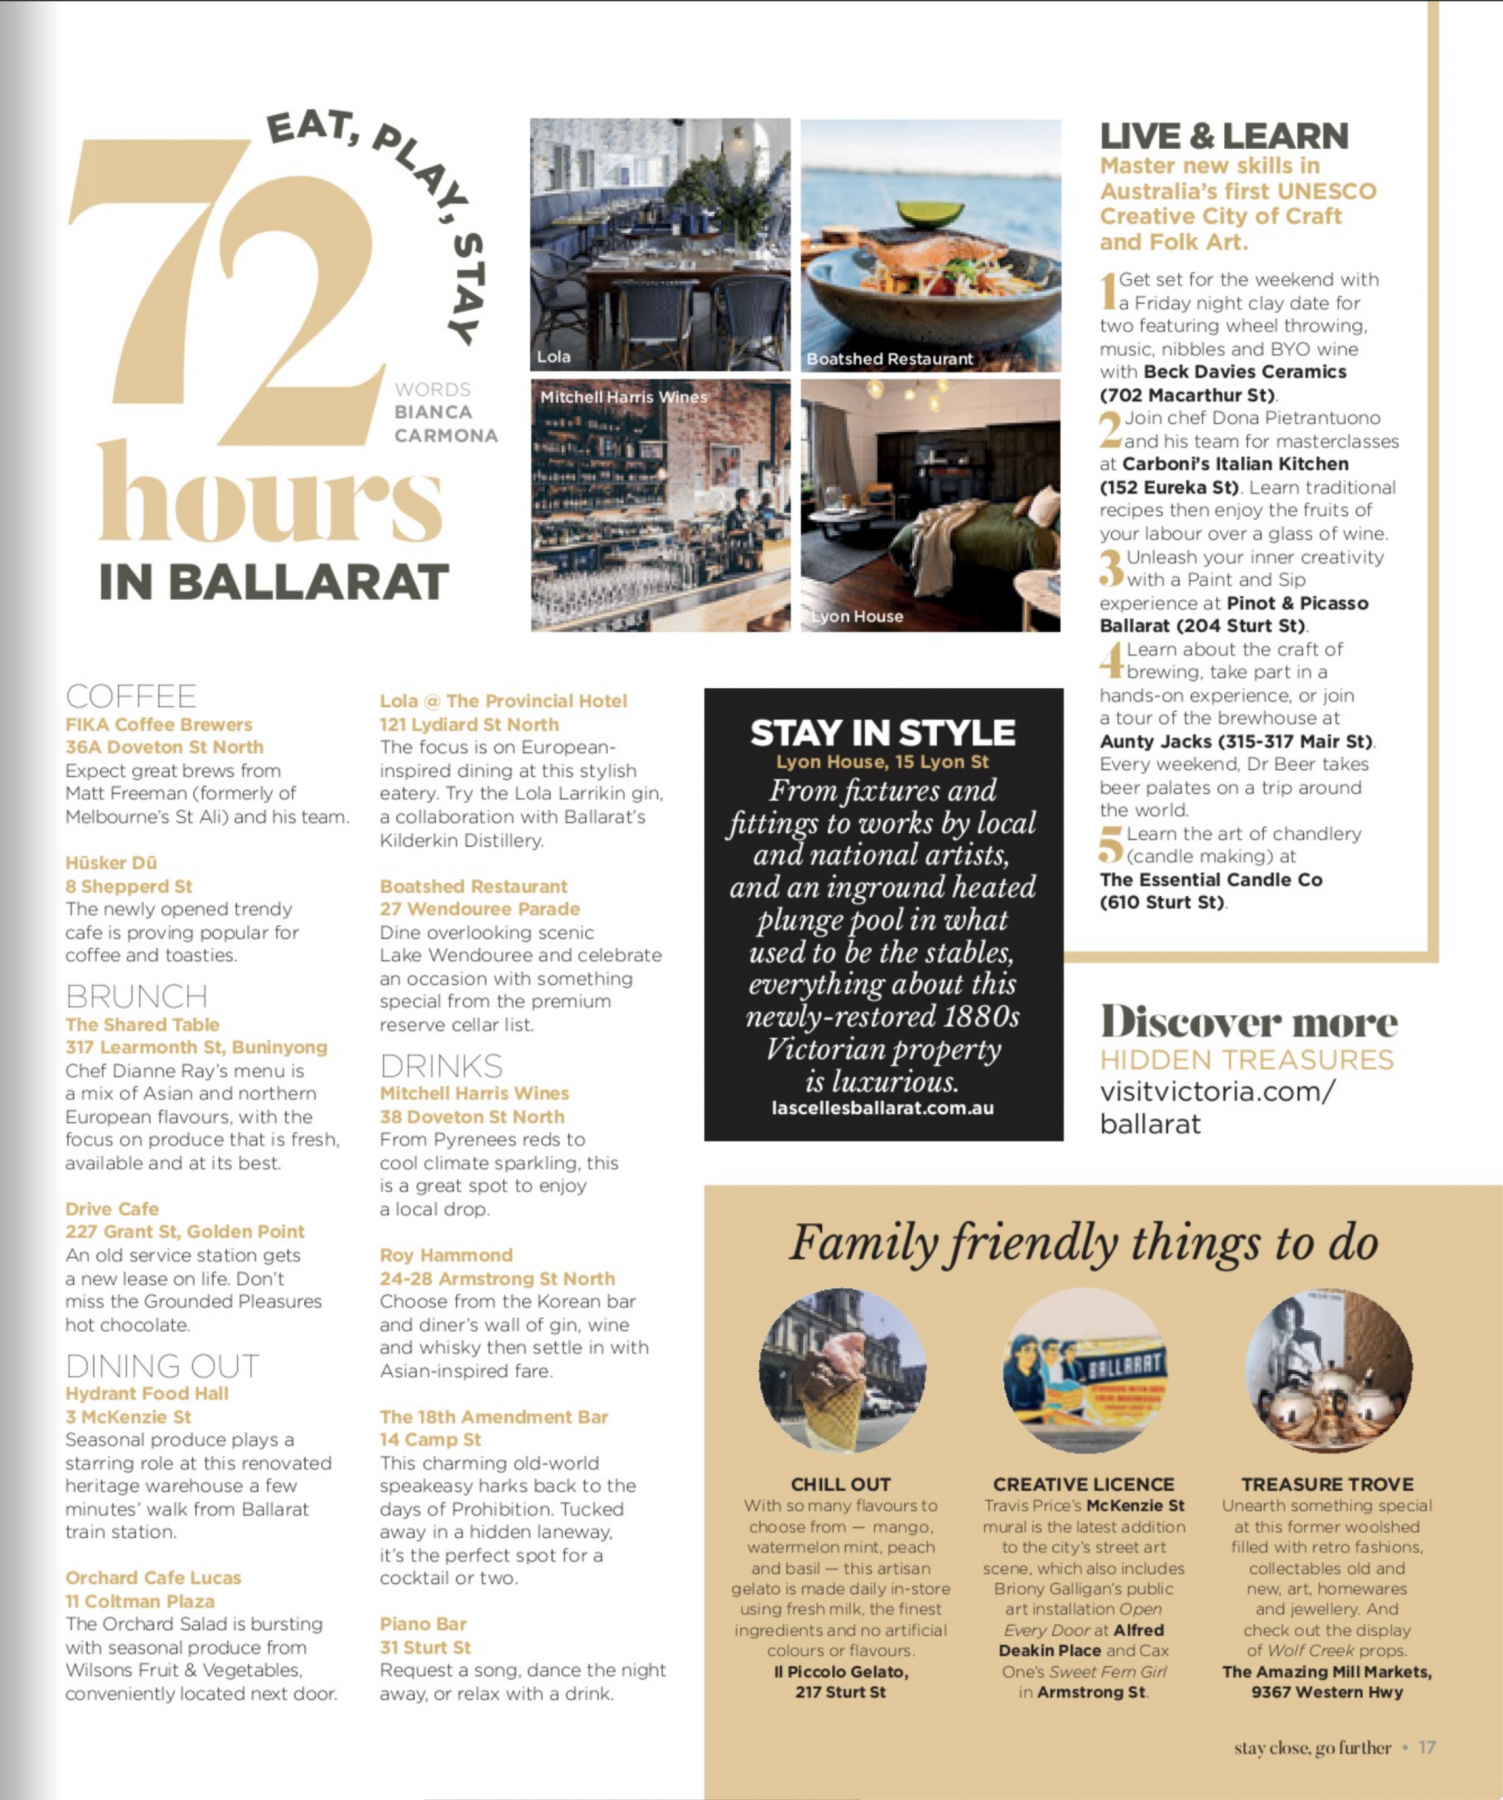 Stay 72 hours in Ballarat